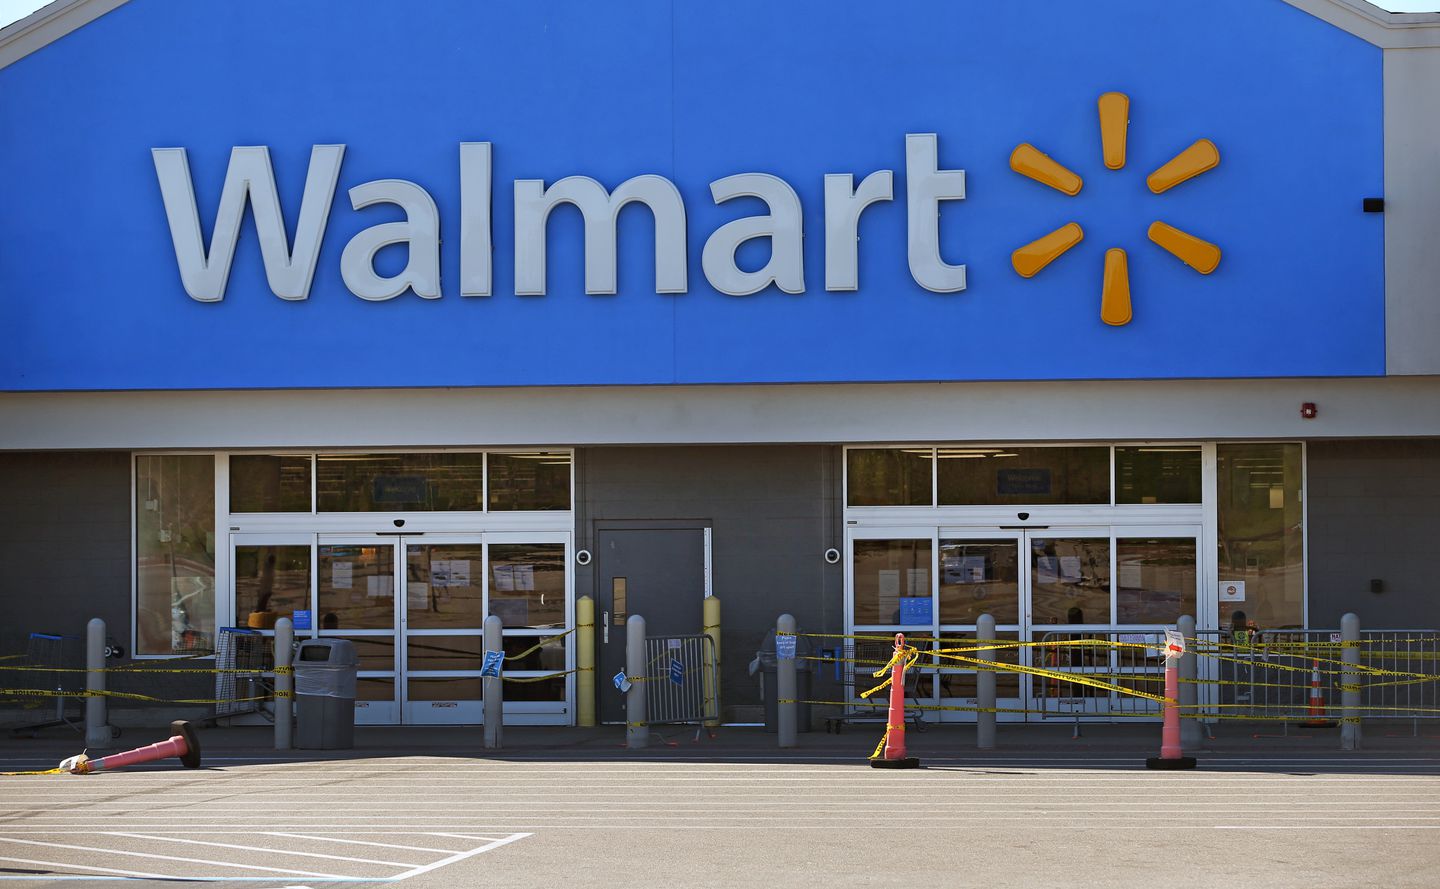 Walmart - Nhà bán lẻ khổng lồ của Mỹ.